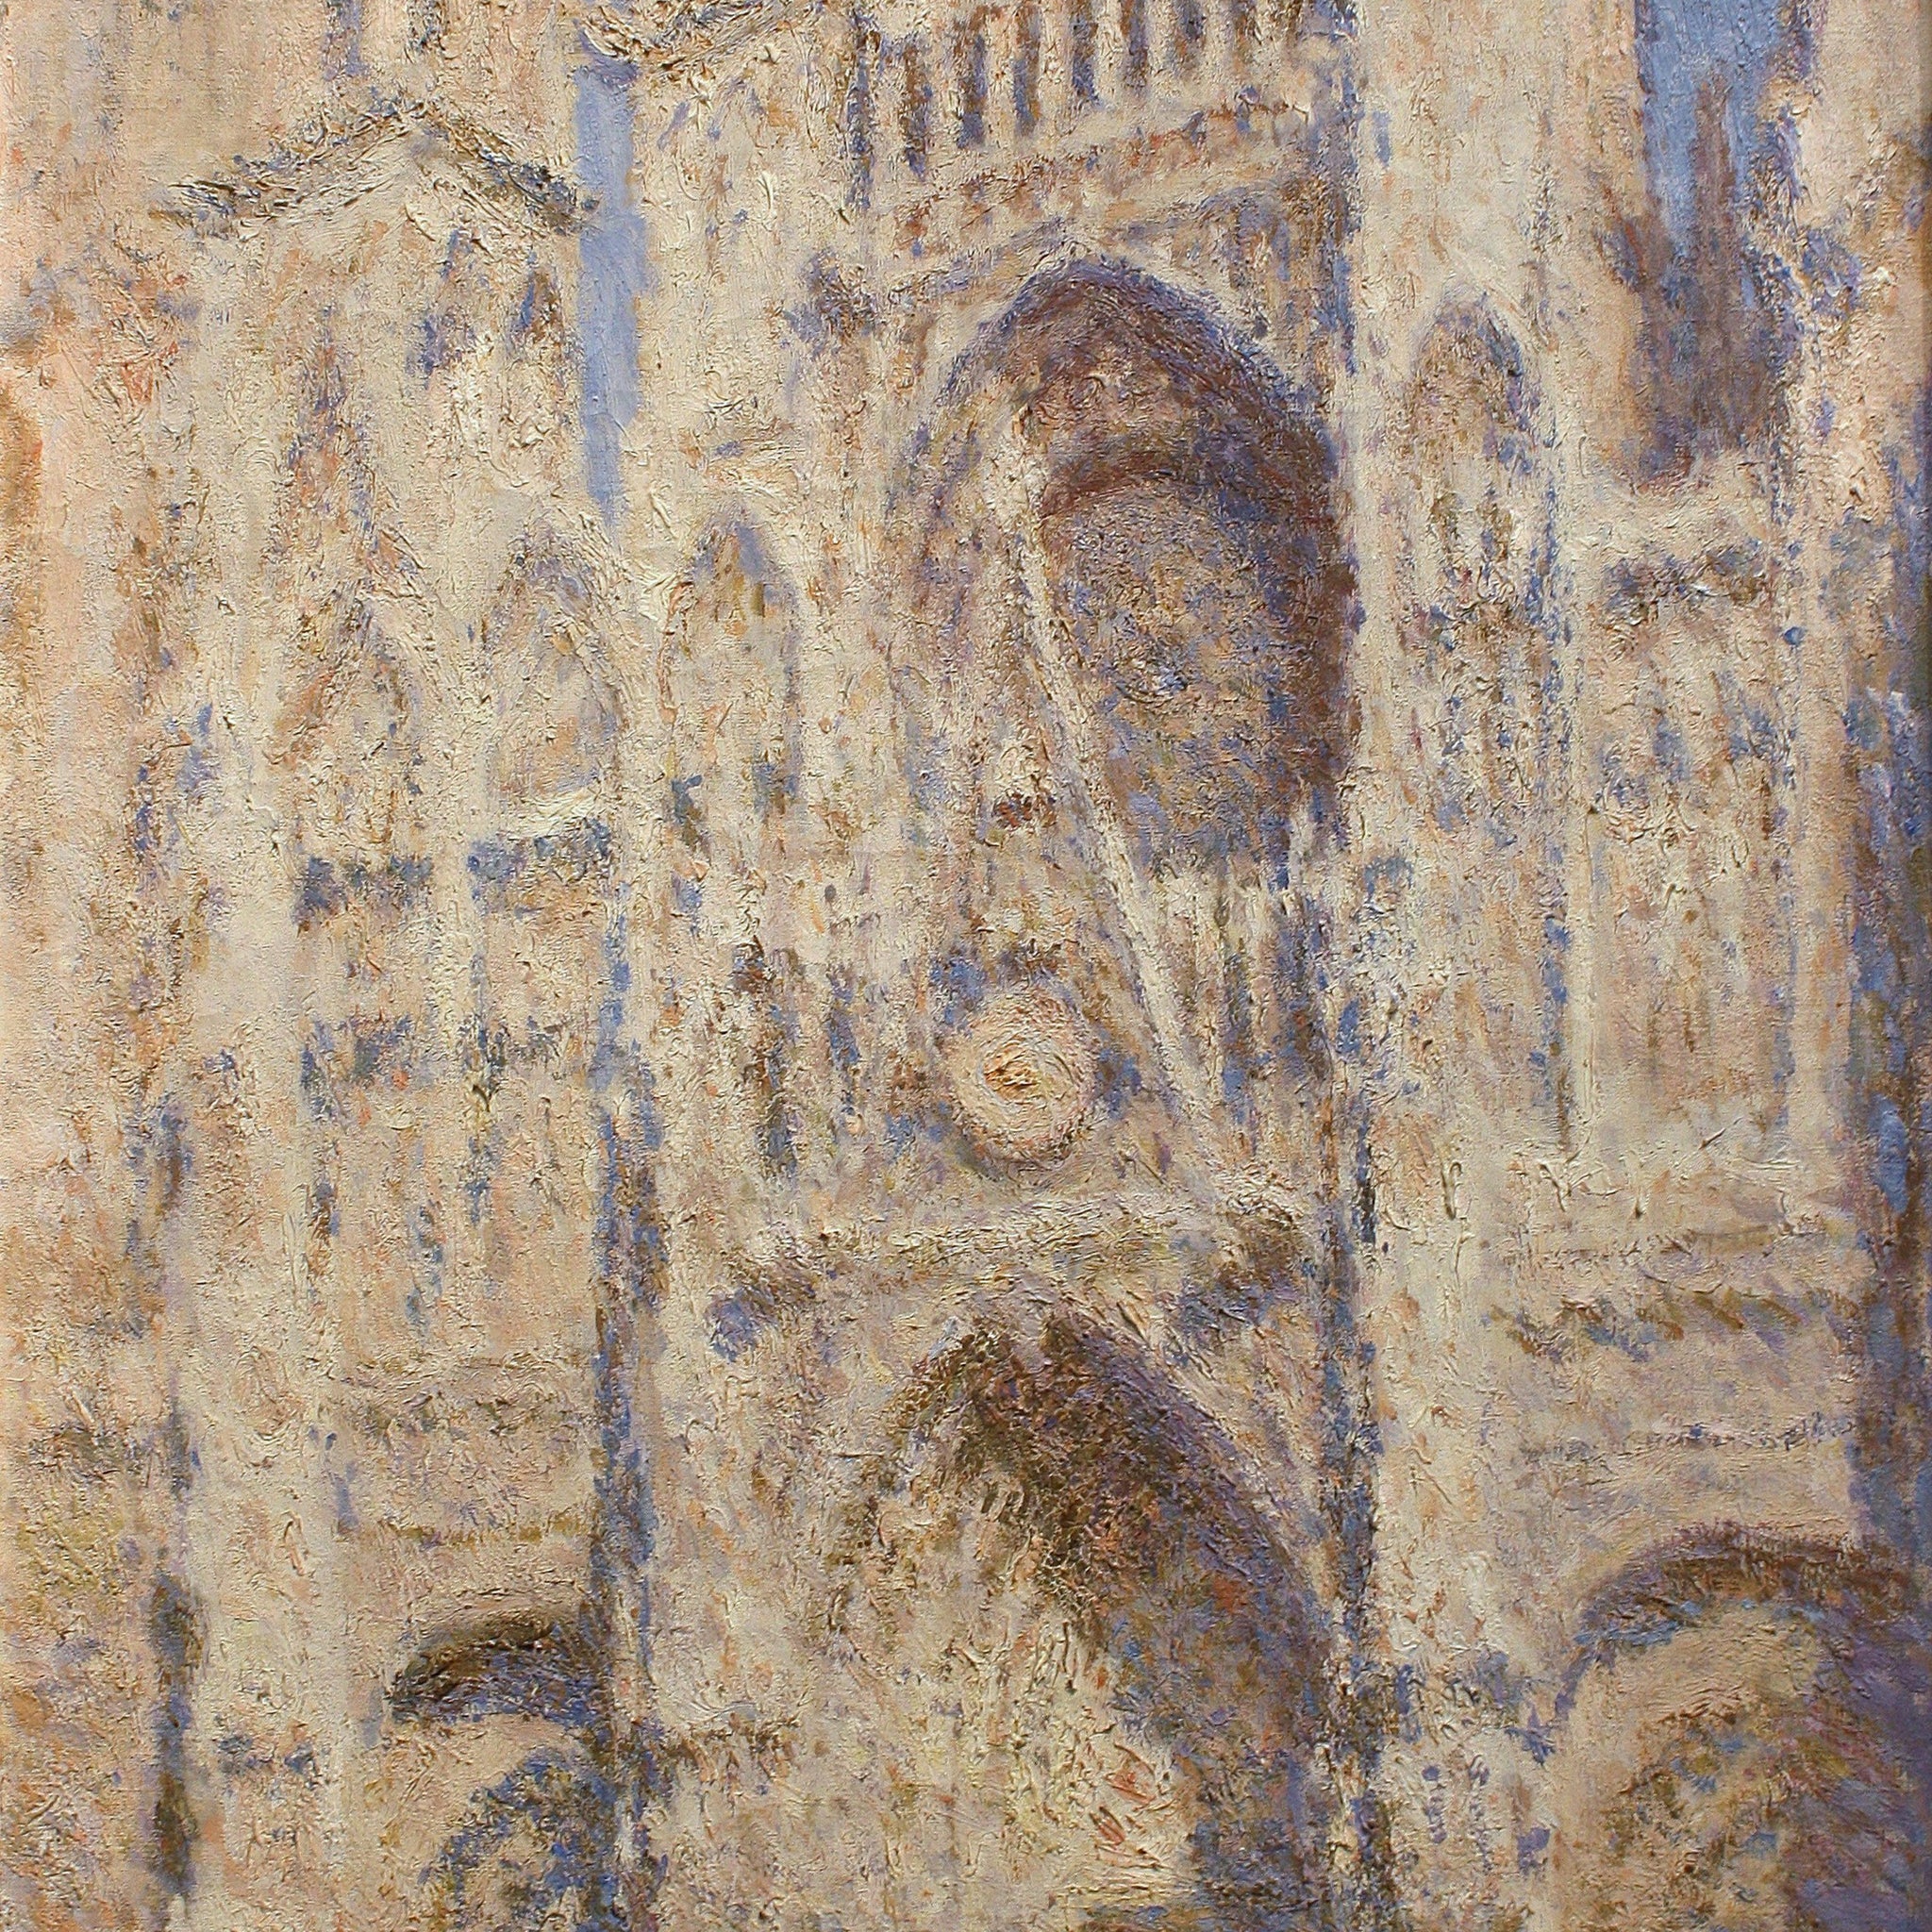 Le Portail de la cathédrale de Rouen au soleil (W1325) - Claude Monet